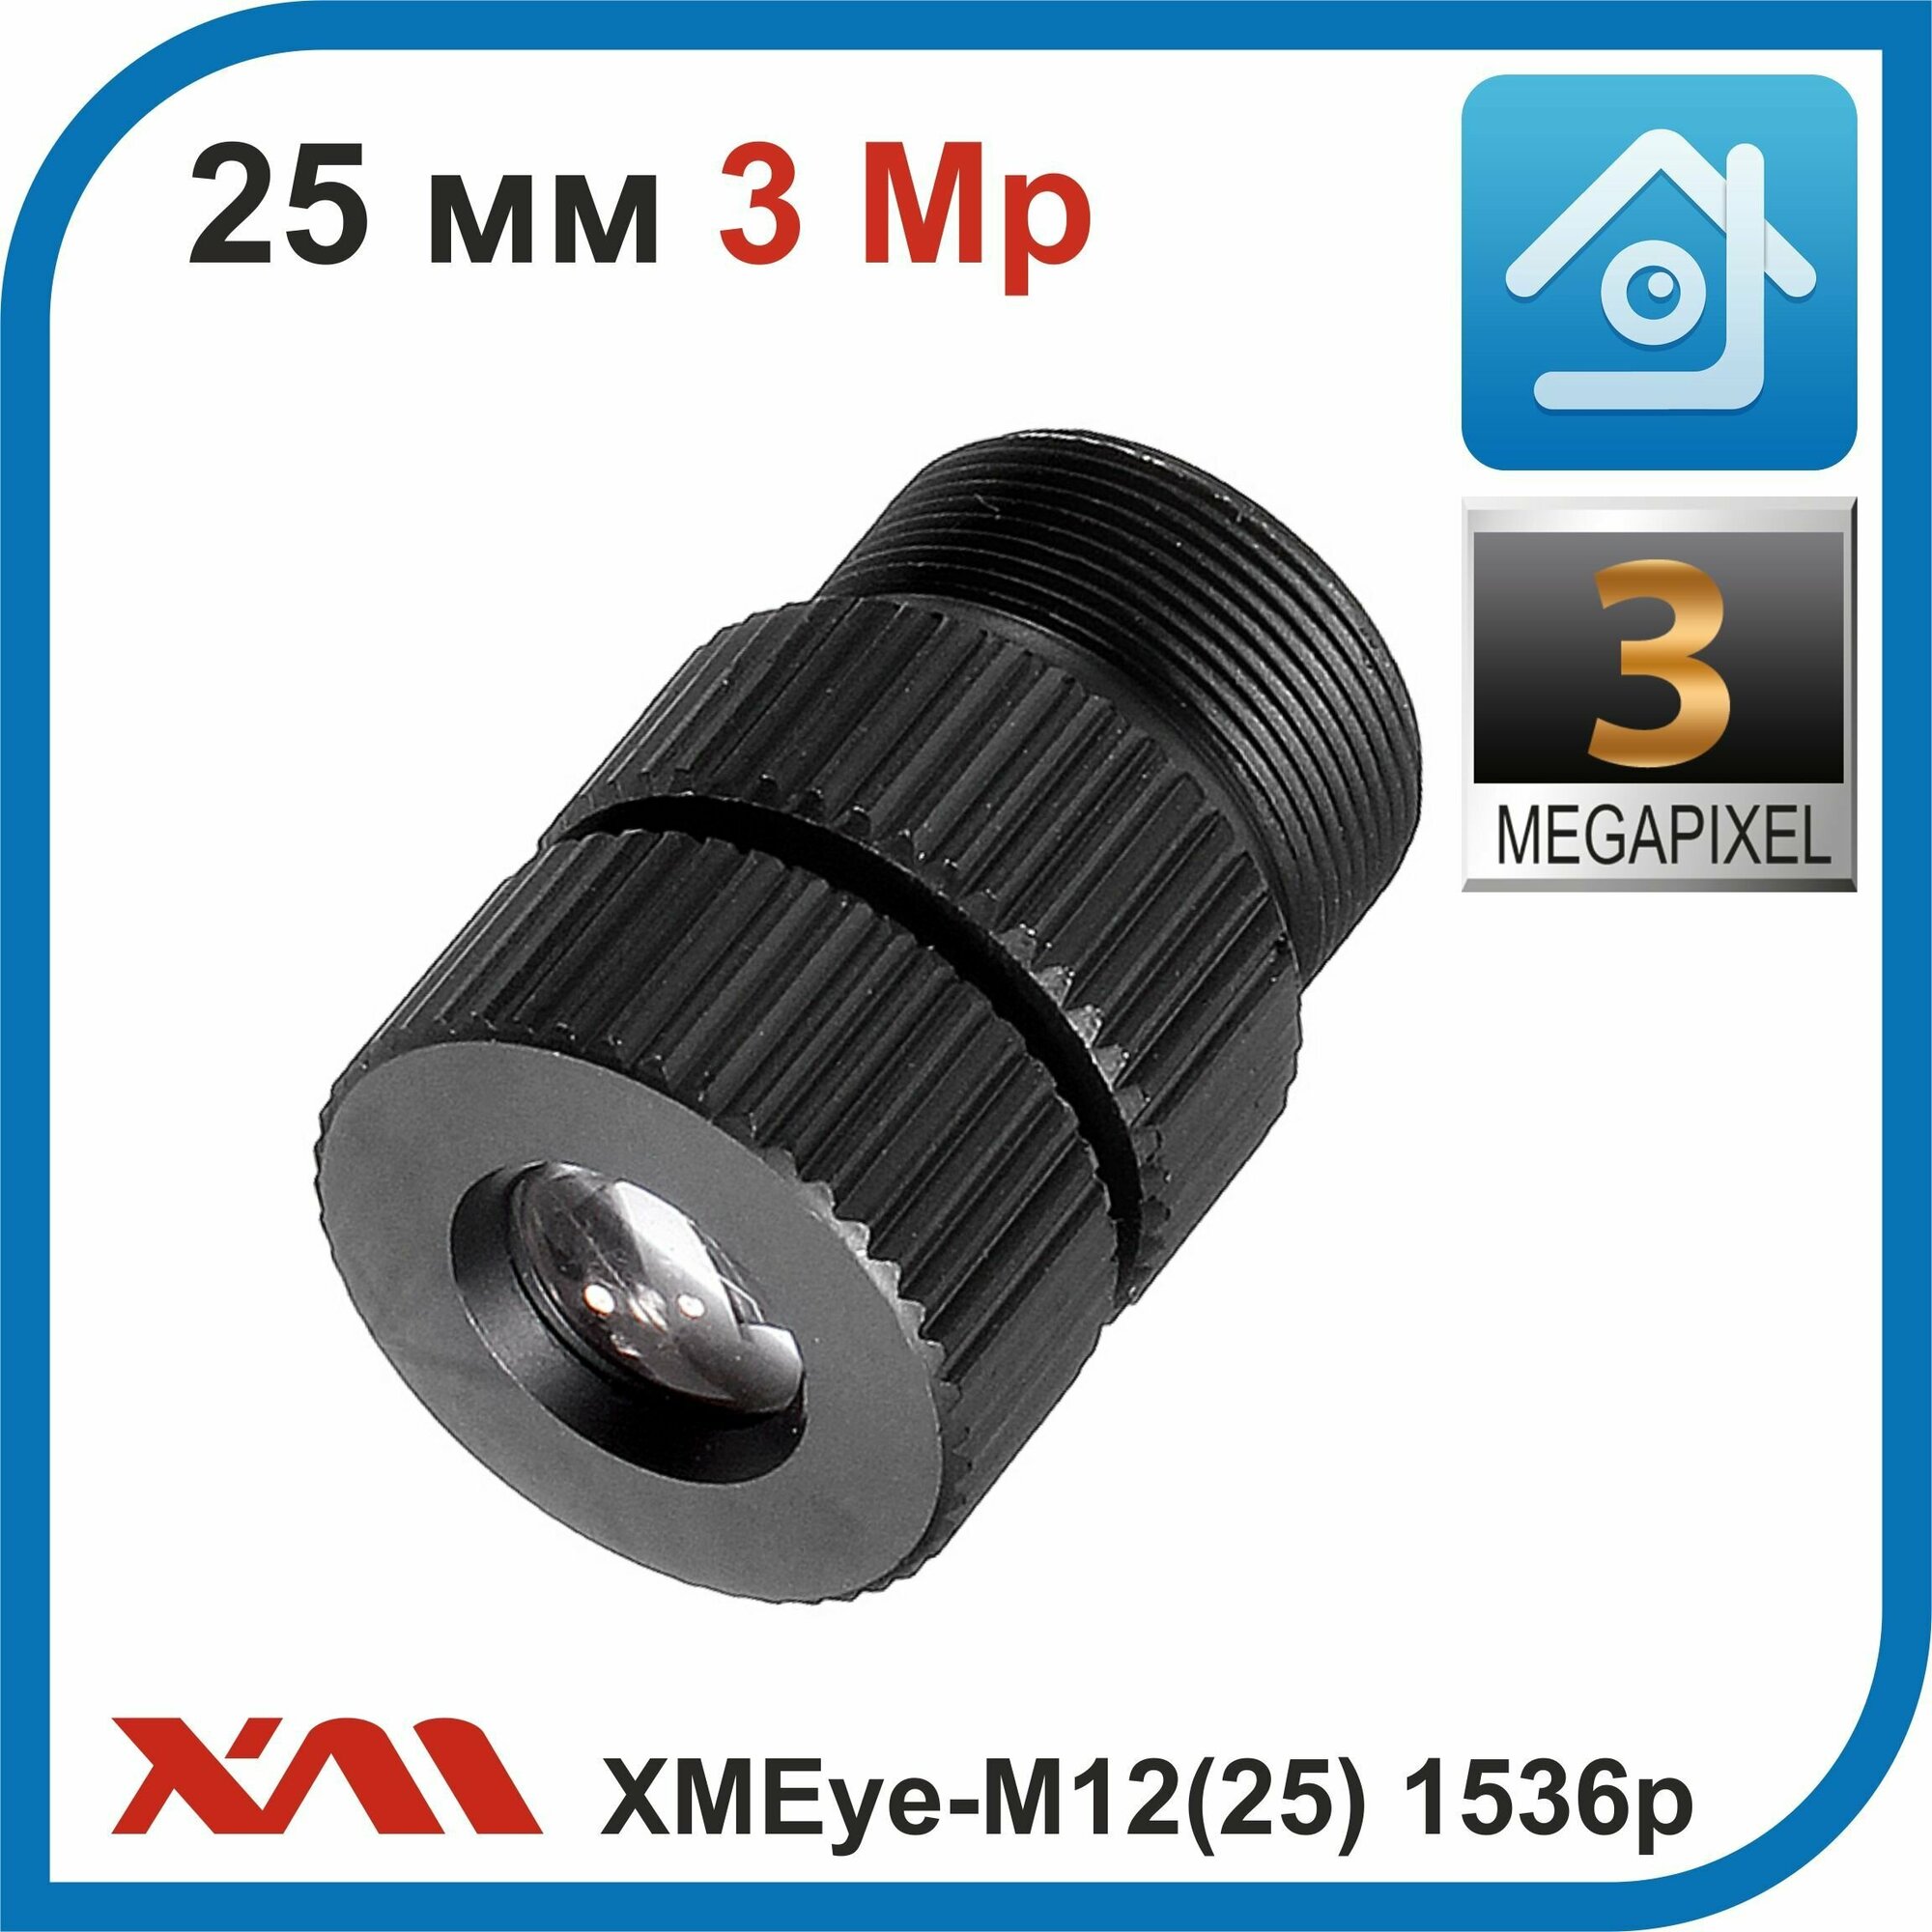 XMEye-M12(25). 1536p. 3 Мп. Объектив М12 для камер видеонаблюдения с фокусным расстоянием 25 мм